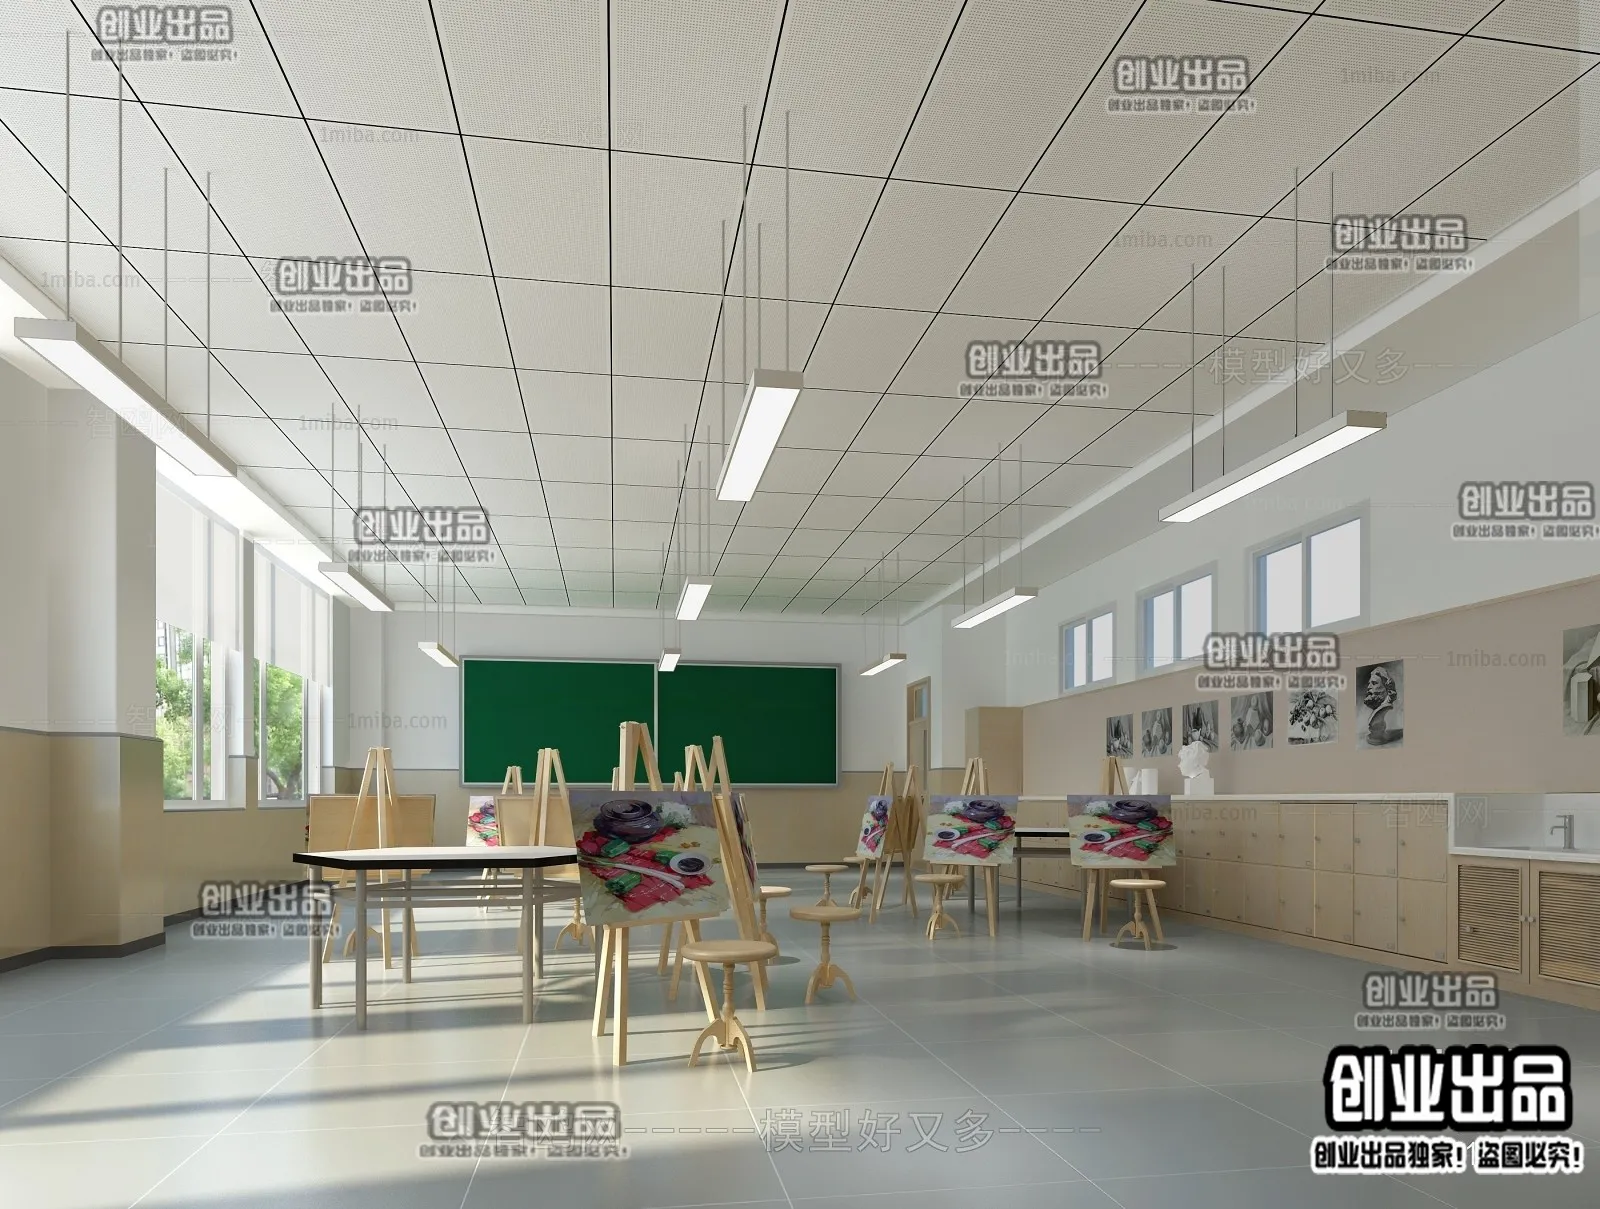 3D SCHOOL INTERIOR (VRAY) – CLASSROOM 3D SCENES – 011